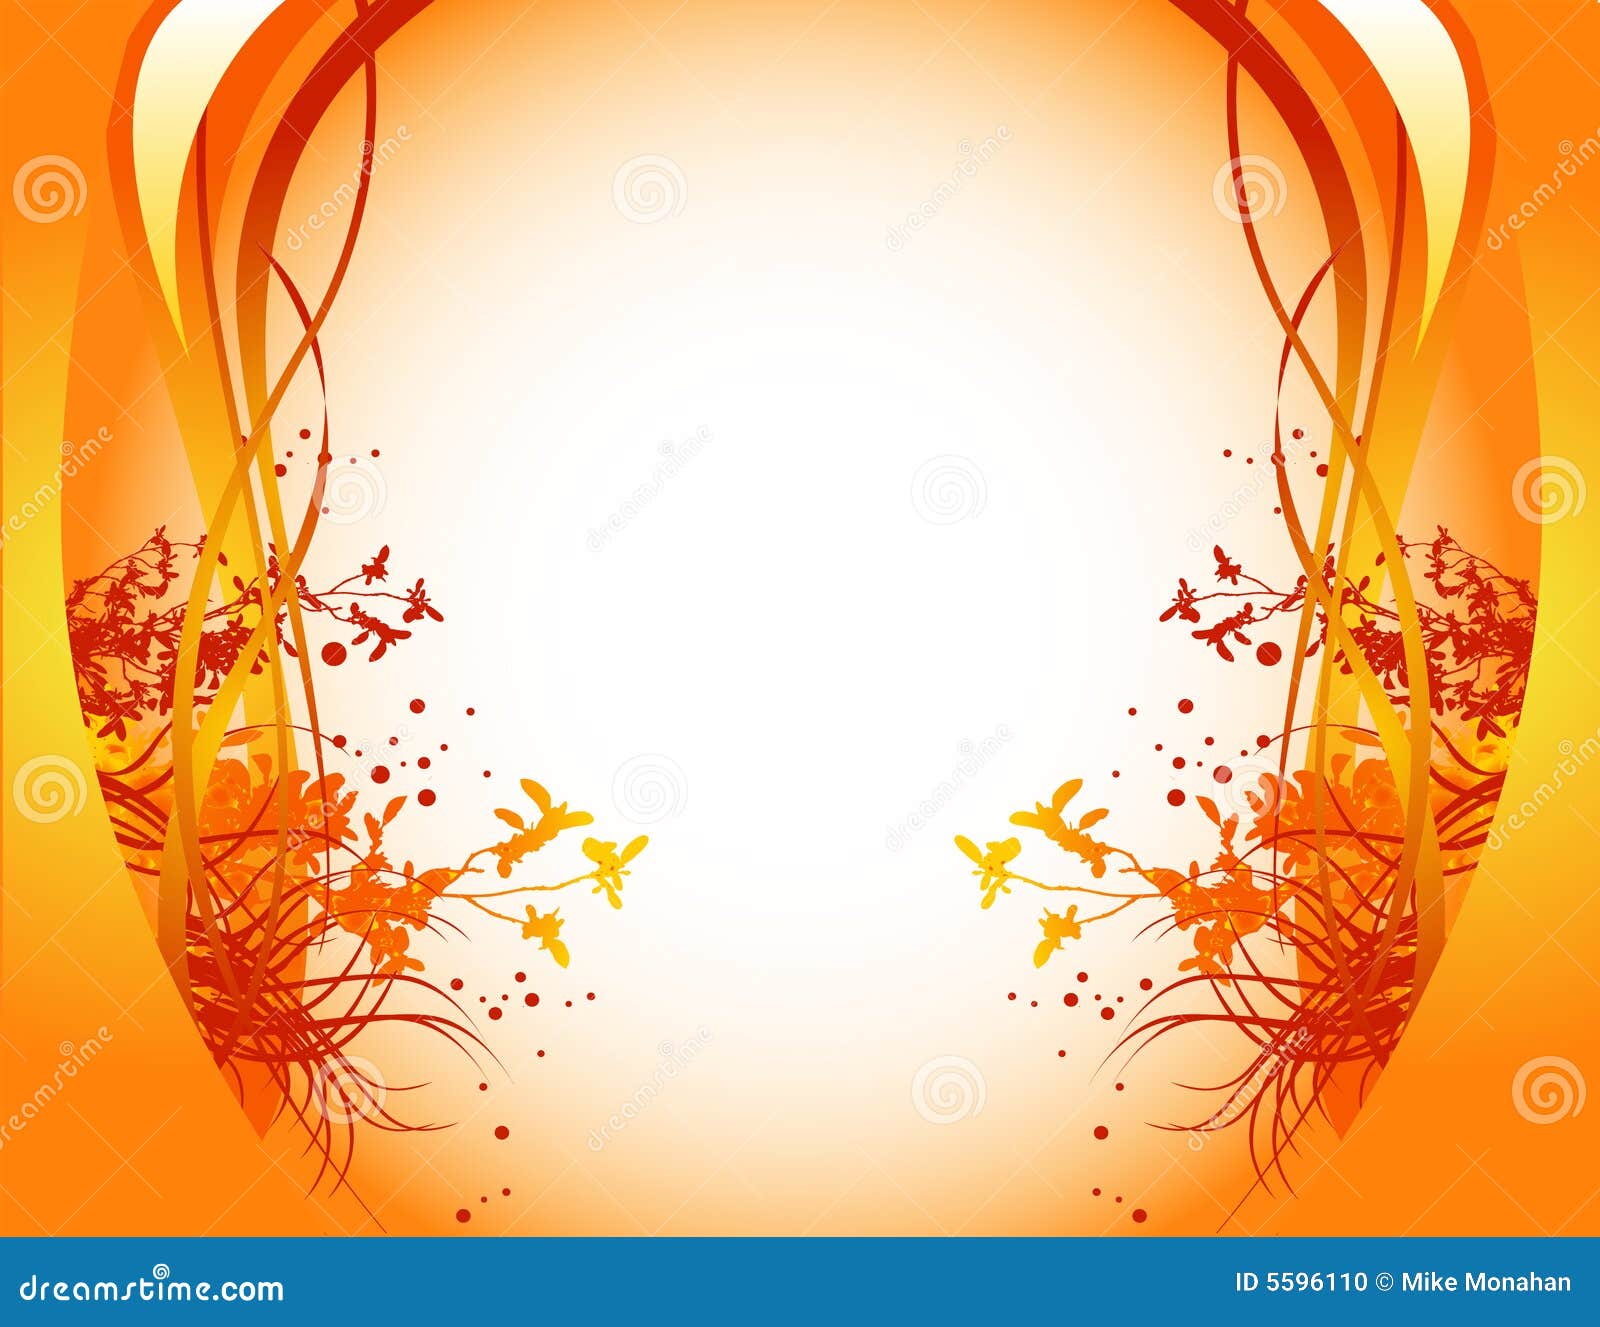 Orange floral background stock vector. Illustration of color - 5596110